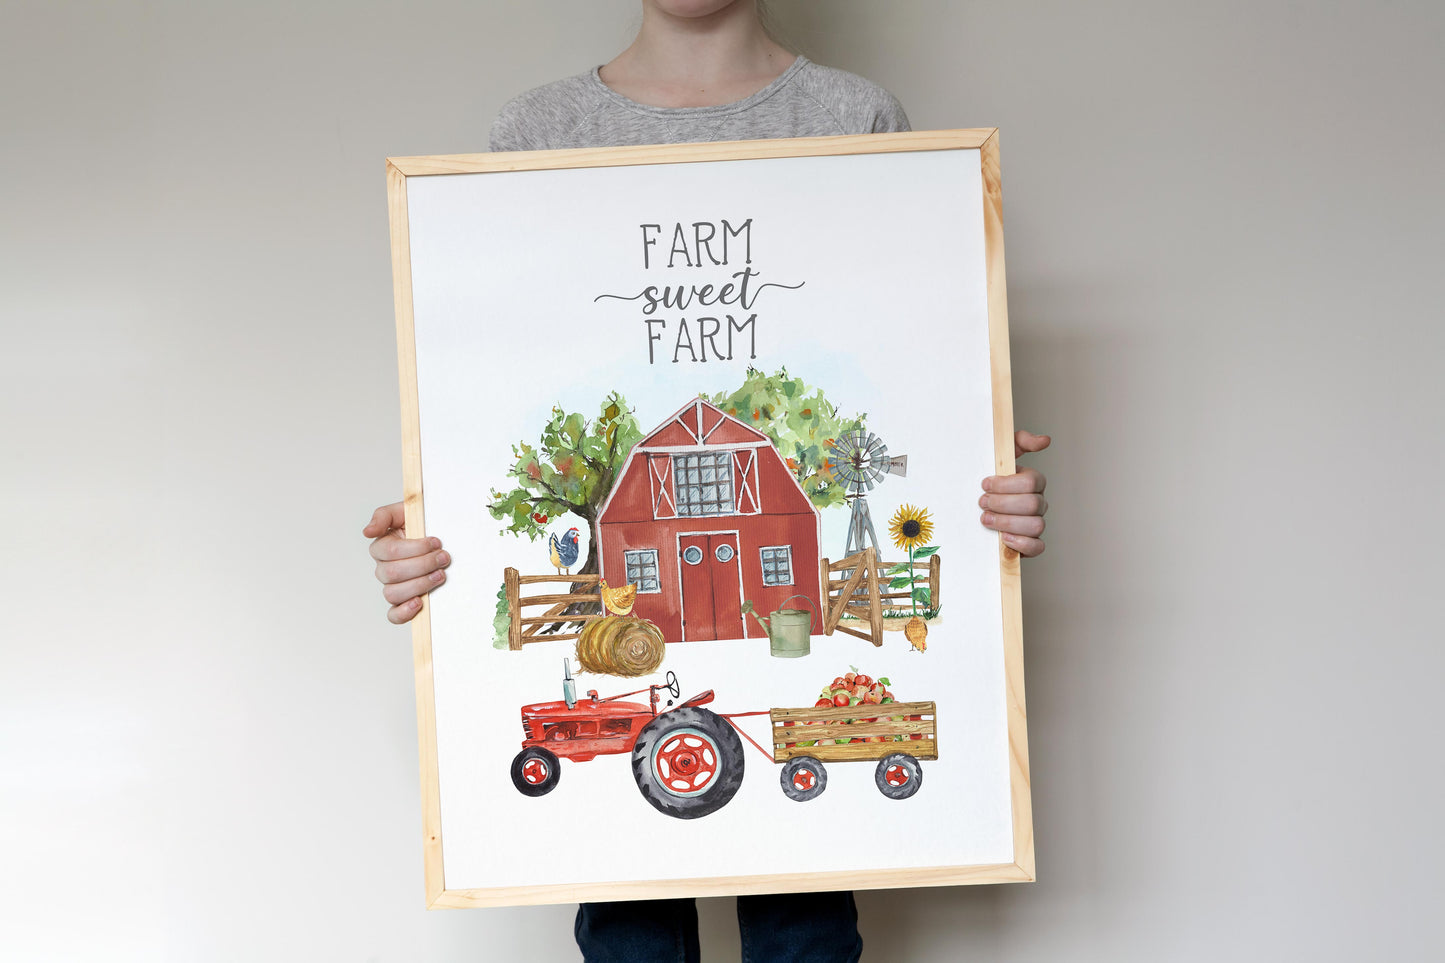 Farm sweet farm, PRINTABLE Farm Wall Art, Farmhouse Nursery Print